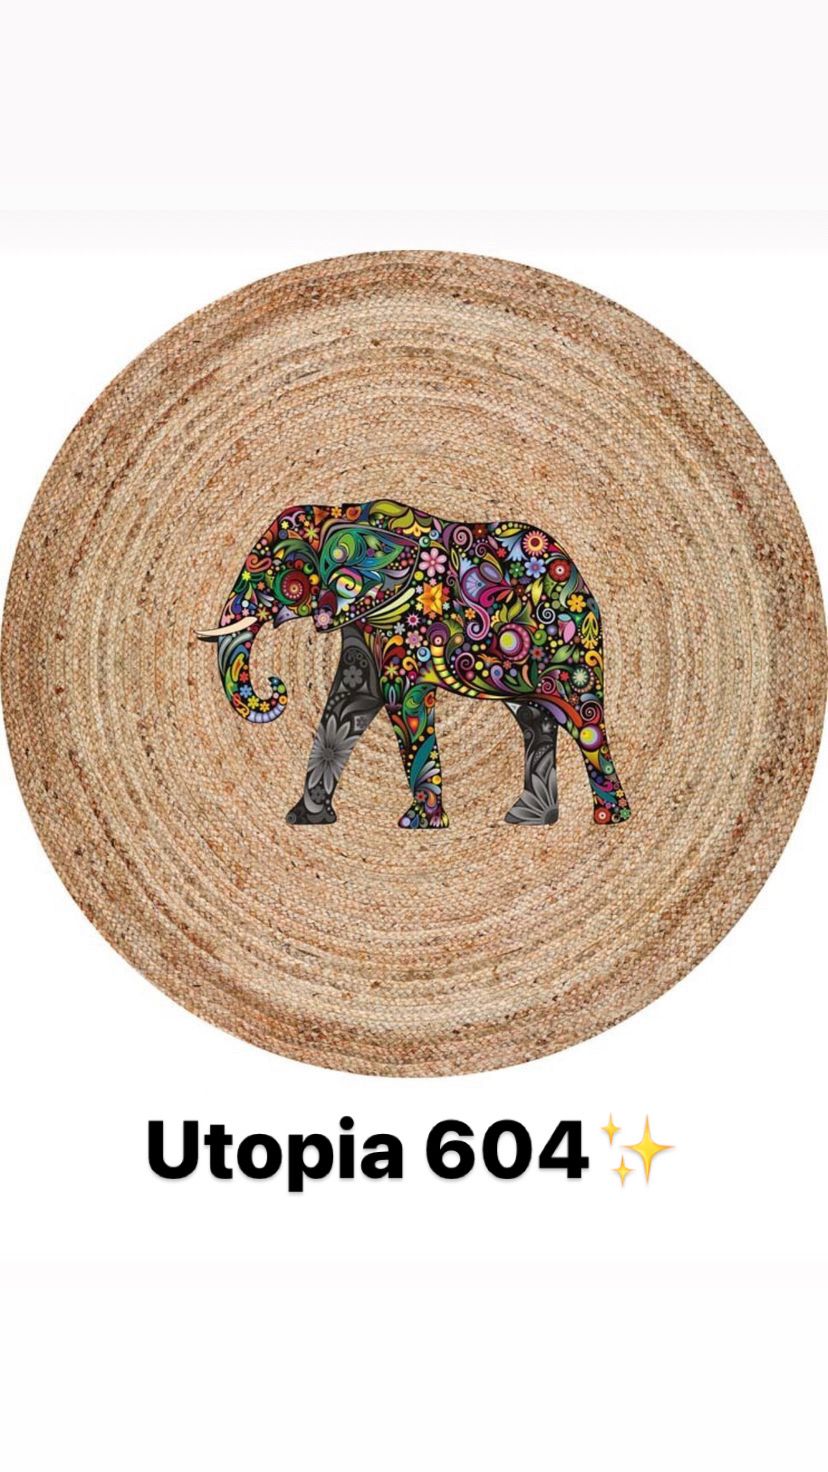 Utopia 604 - BambusHome